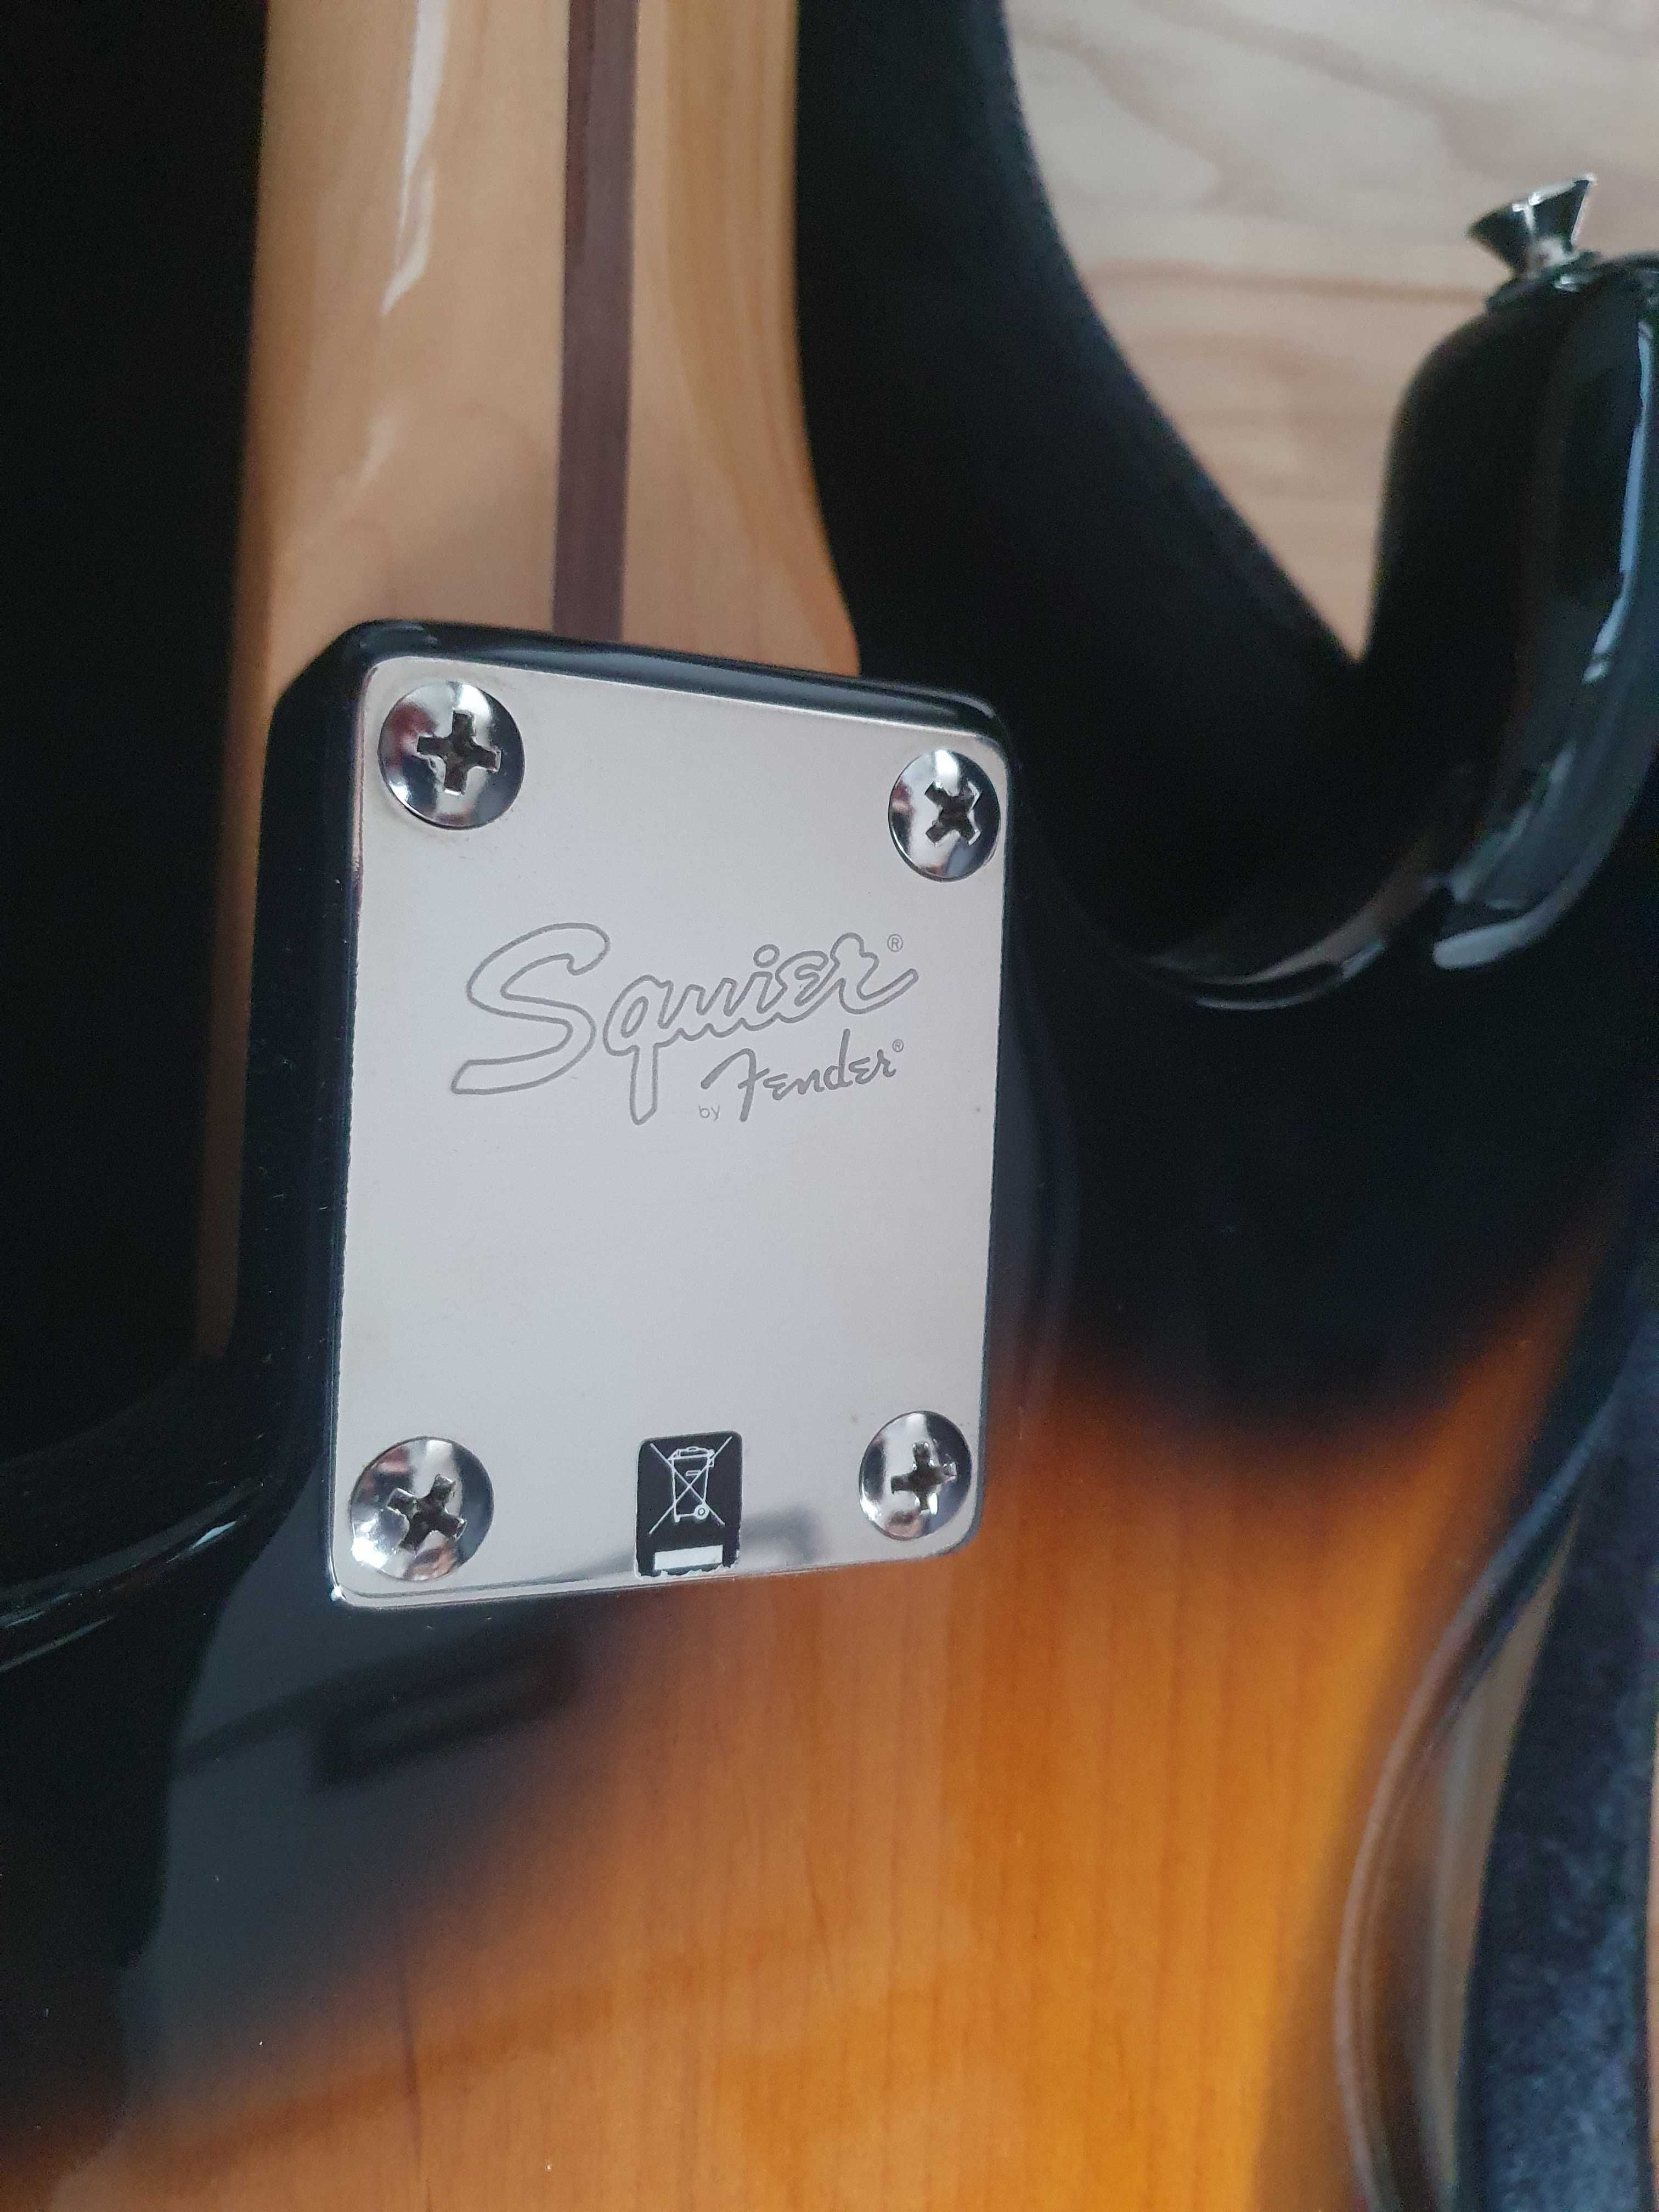 Gitara elektryczna Stratocaster korpus Squier gryf Fender